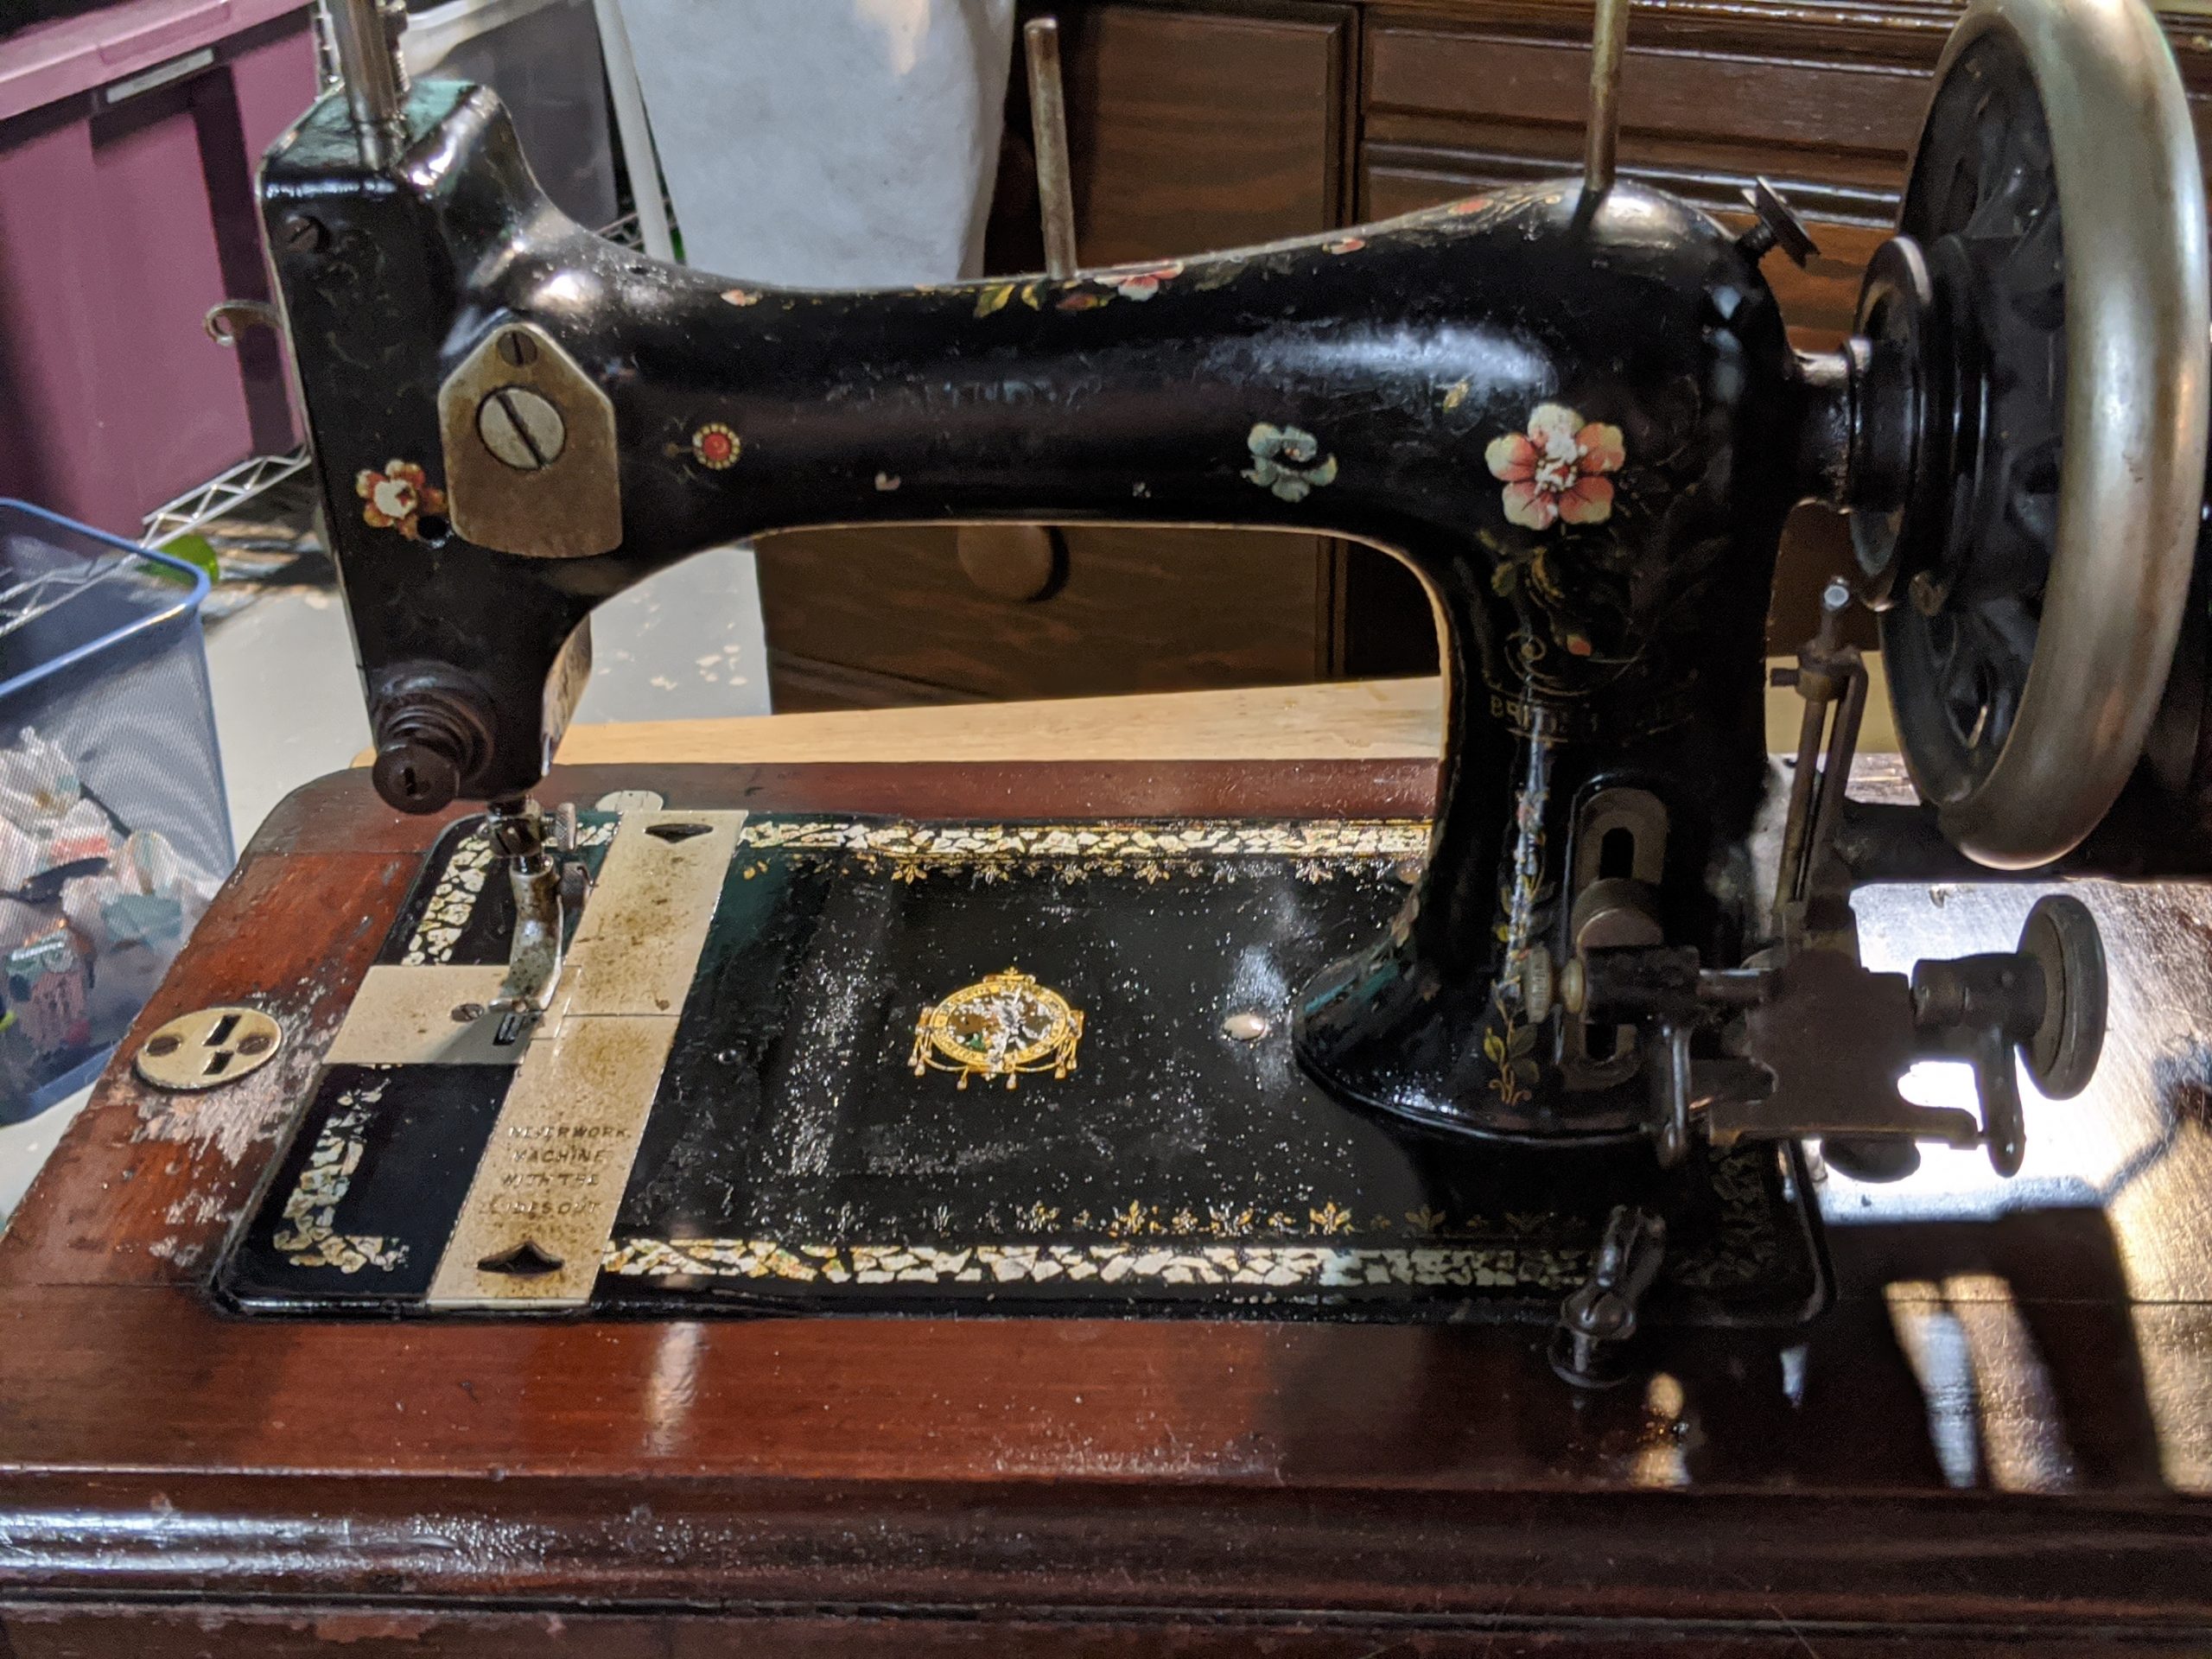 Episode 2 – Beatrice: Bradbury Family VS Sewing Machine